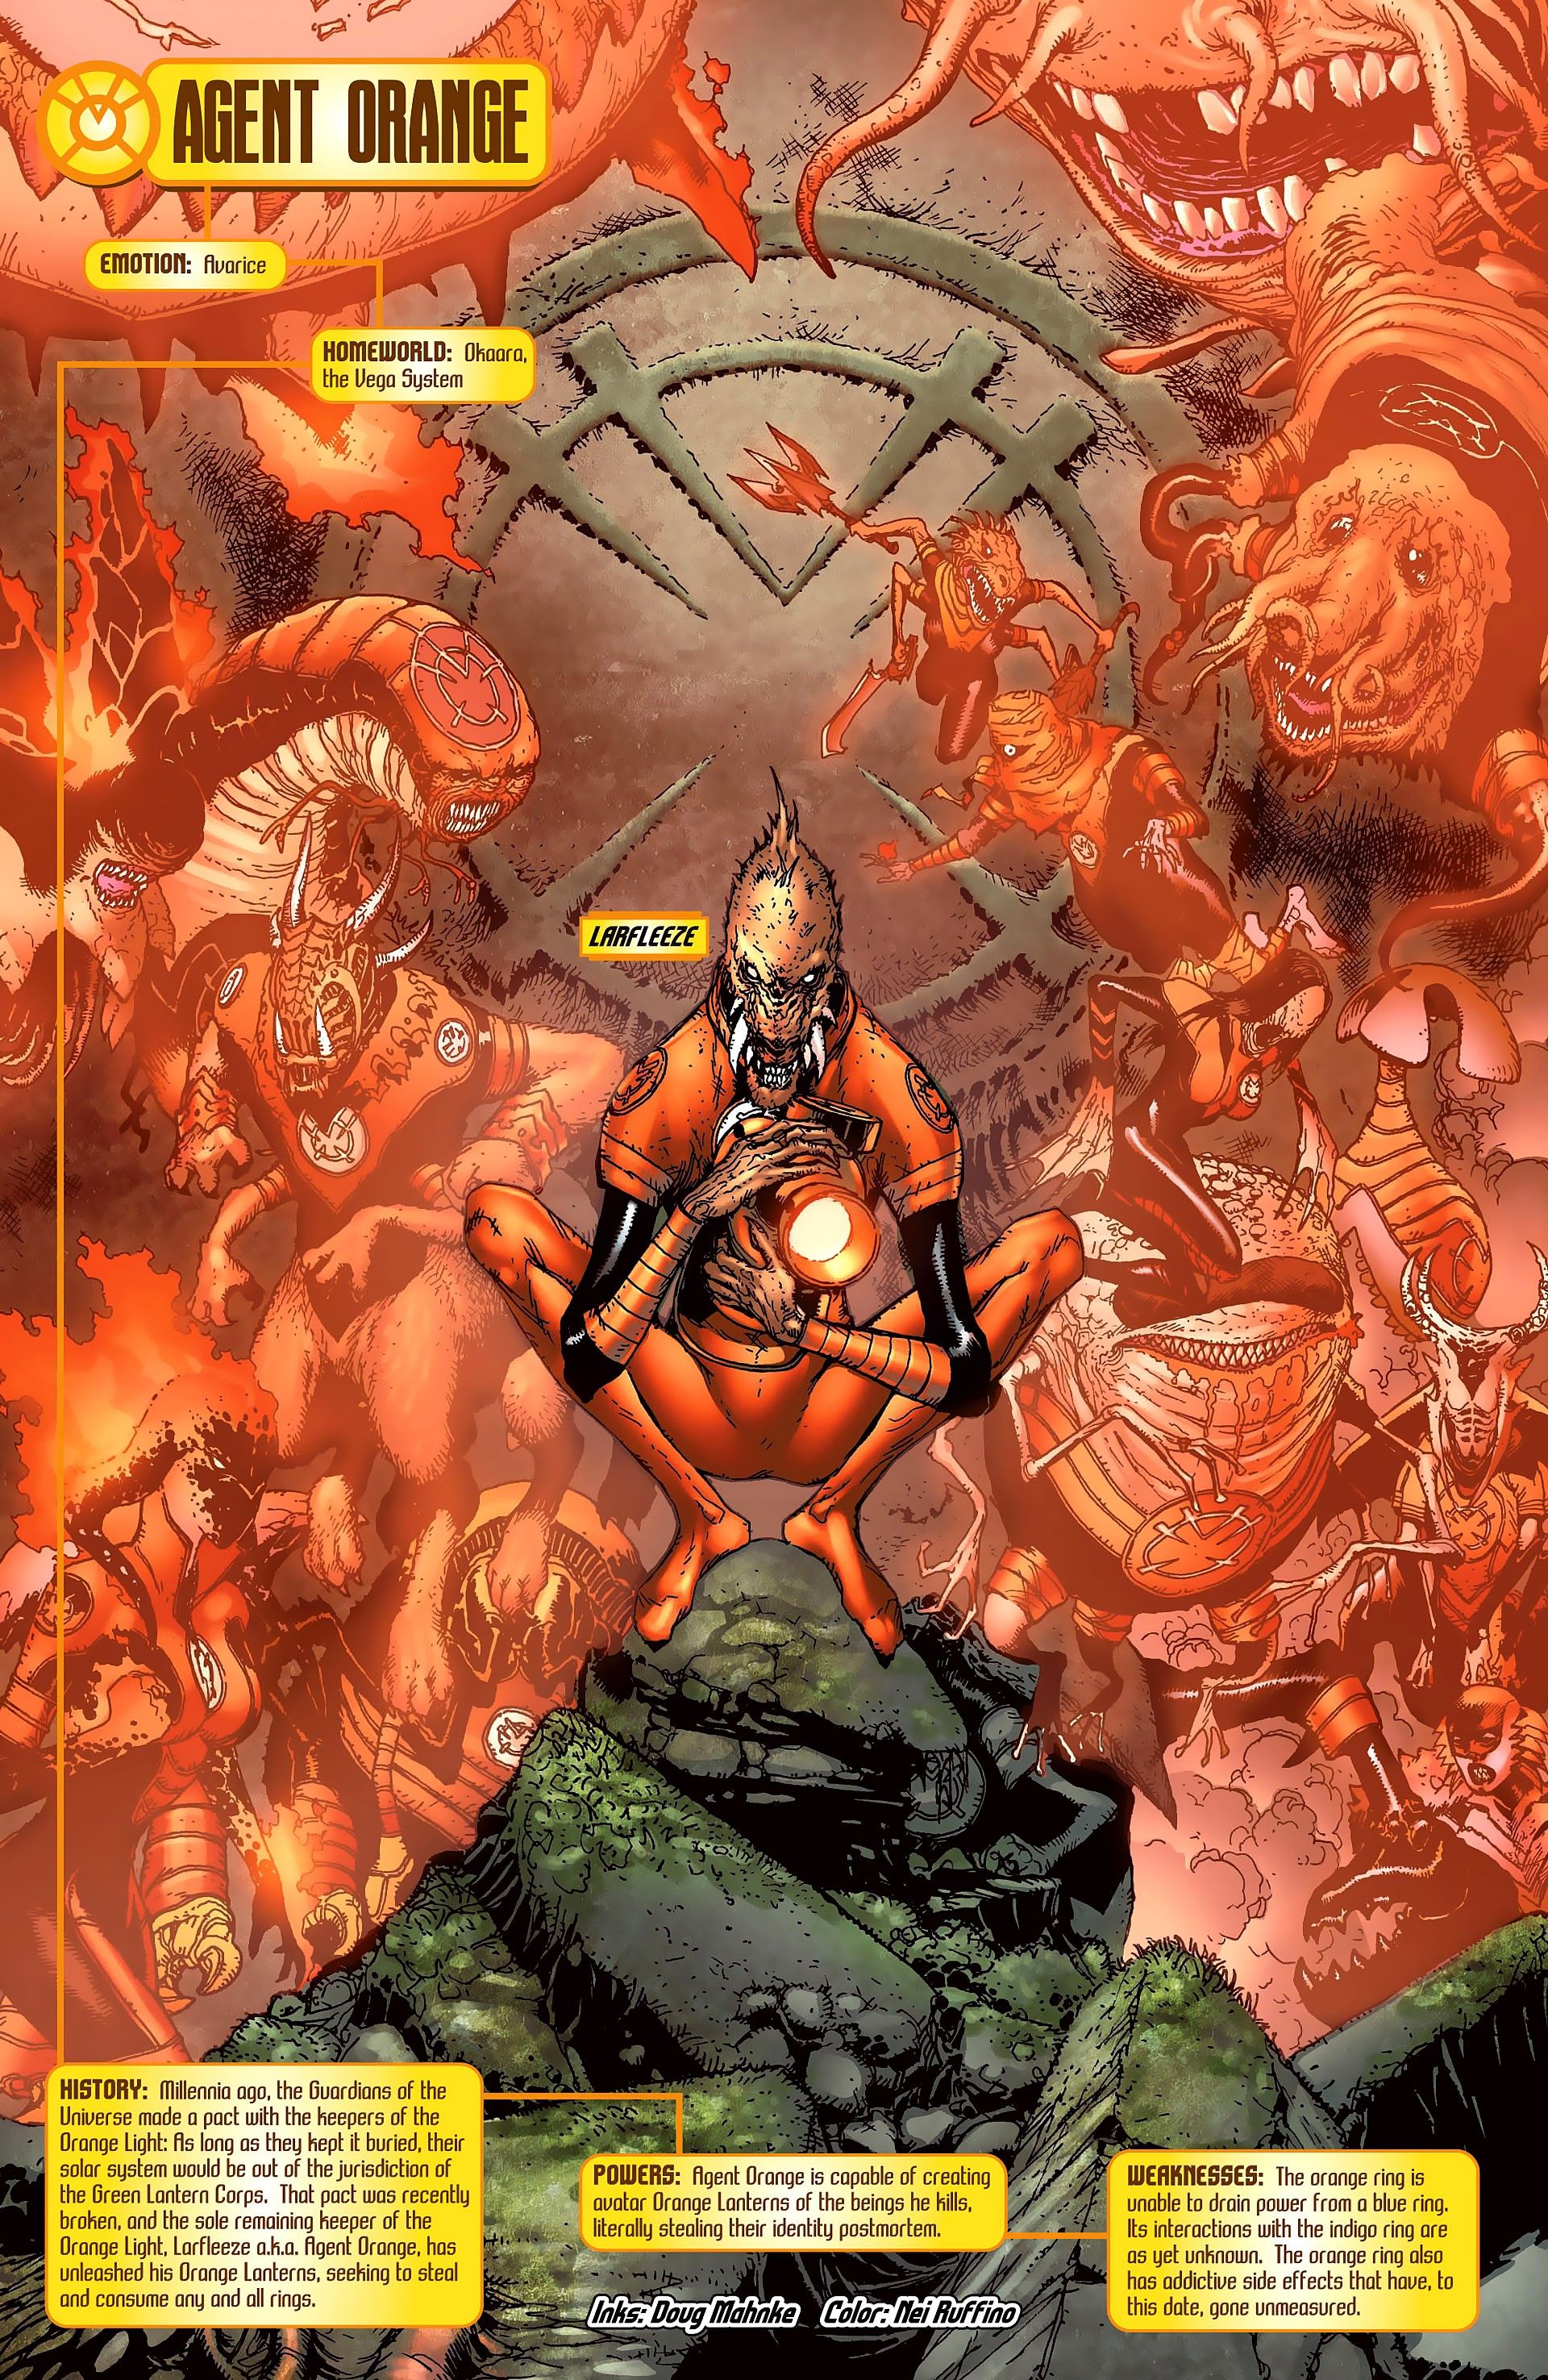 Image of Larfleeze surrounded by Orange Lanterns